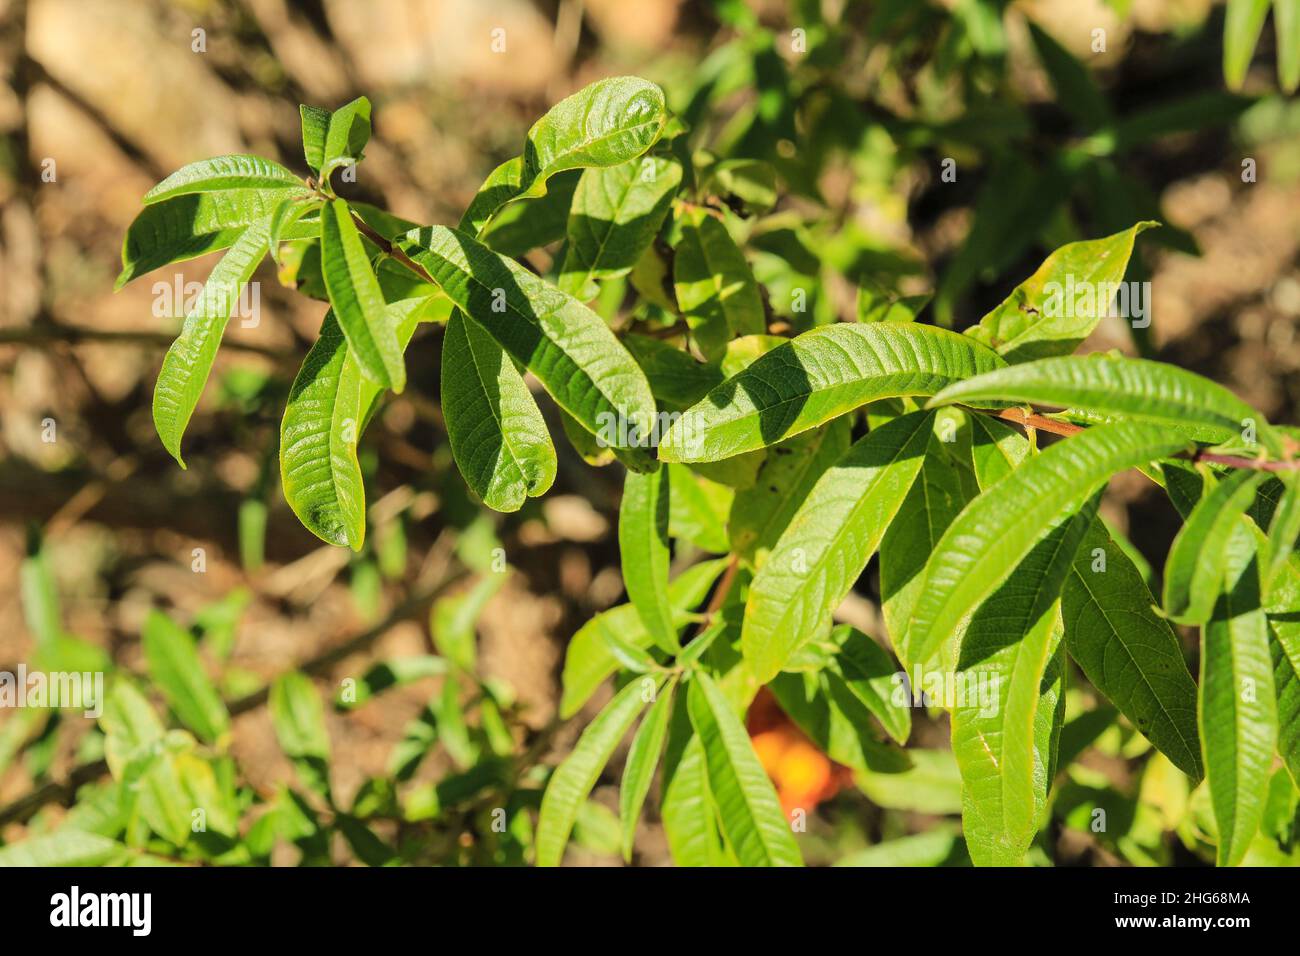 Aloysia citriodora plant in the garden under the sun Stock Photo